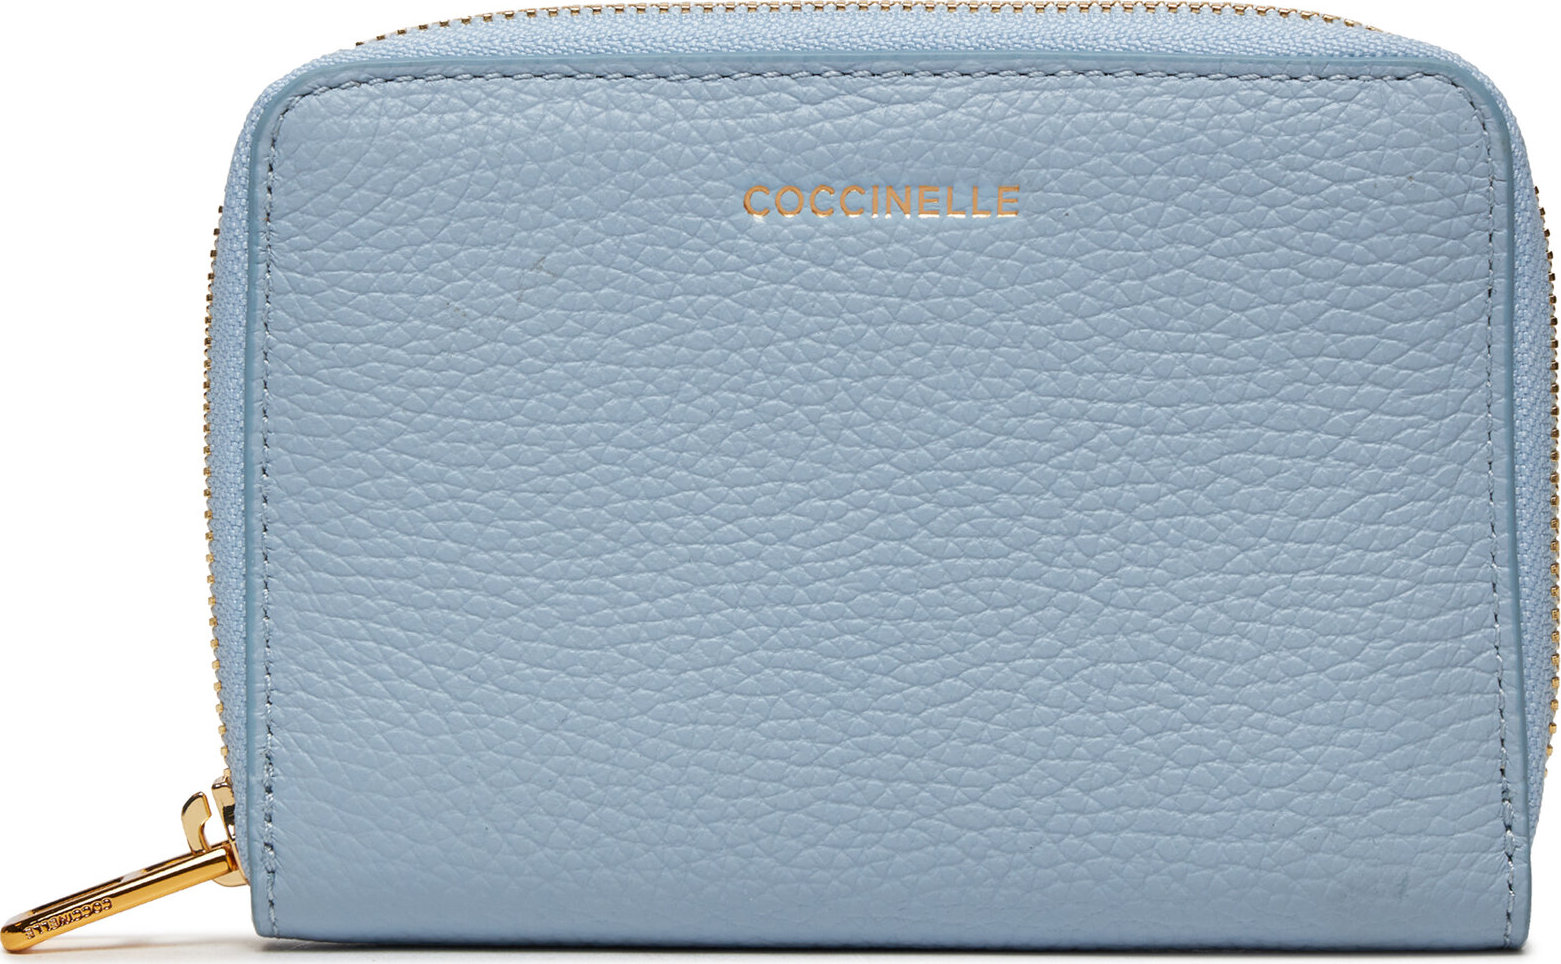 Velká dámská peněženka Coccinelle MQF Coccinellemagie E2 MQF 11 C5 01 Mist Blue B35